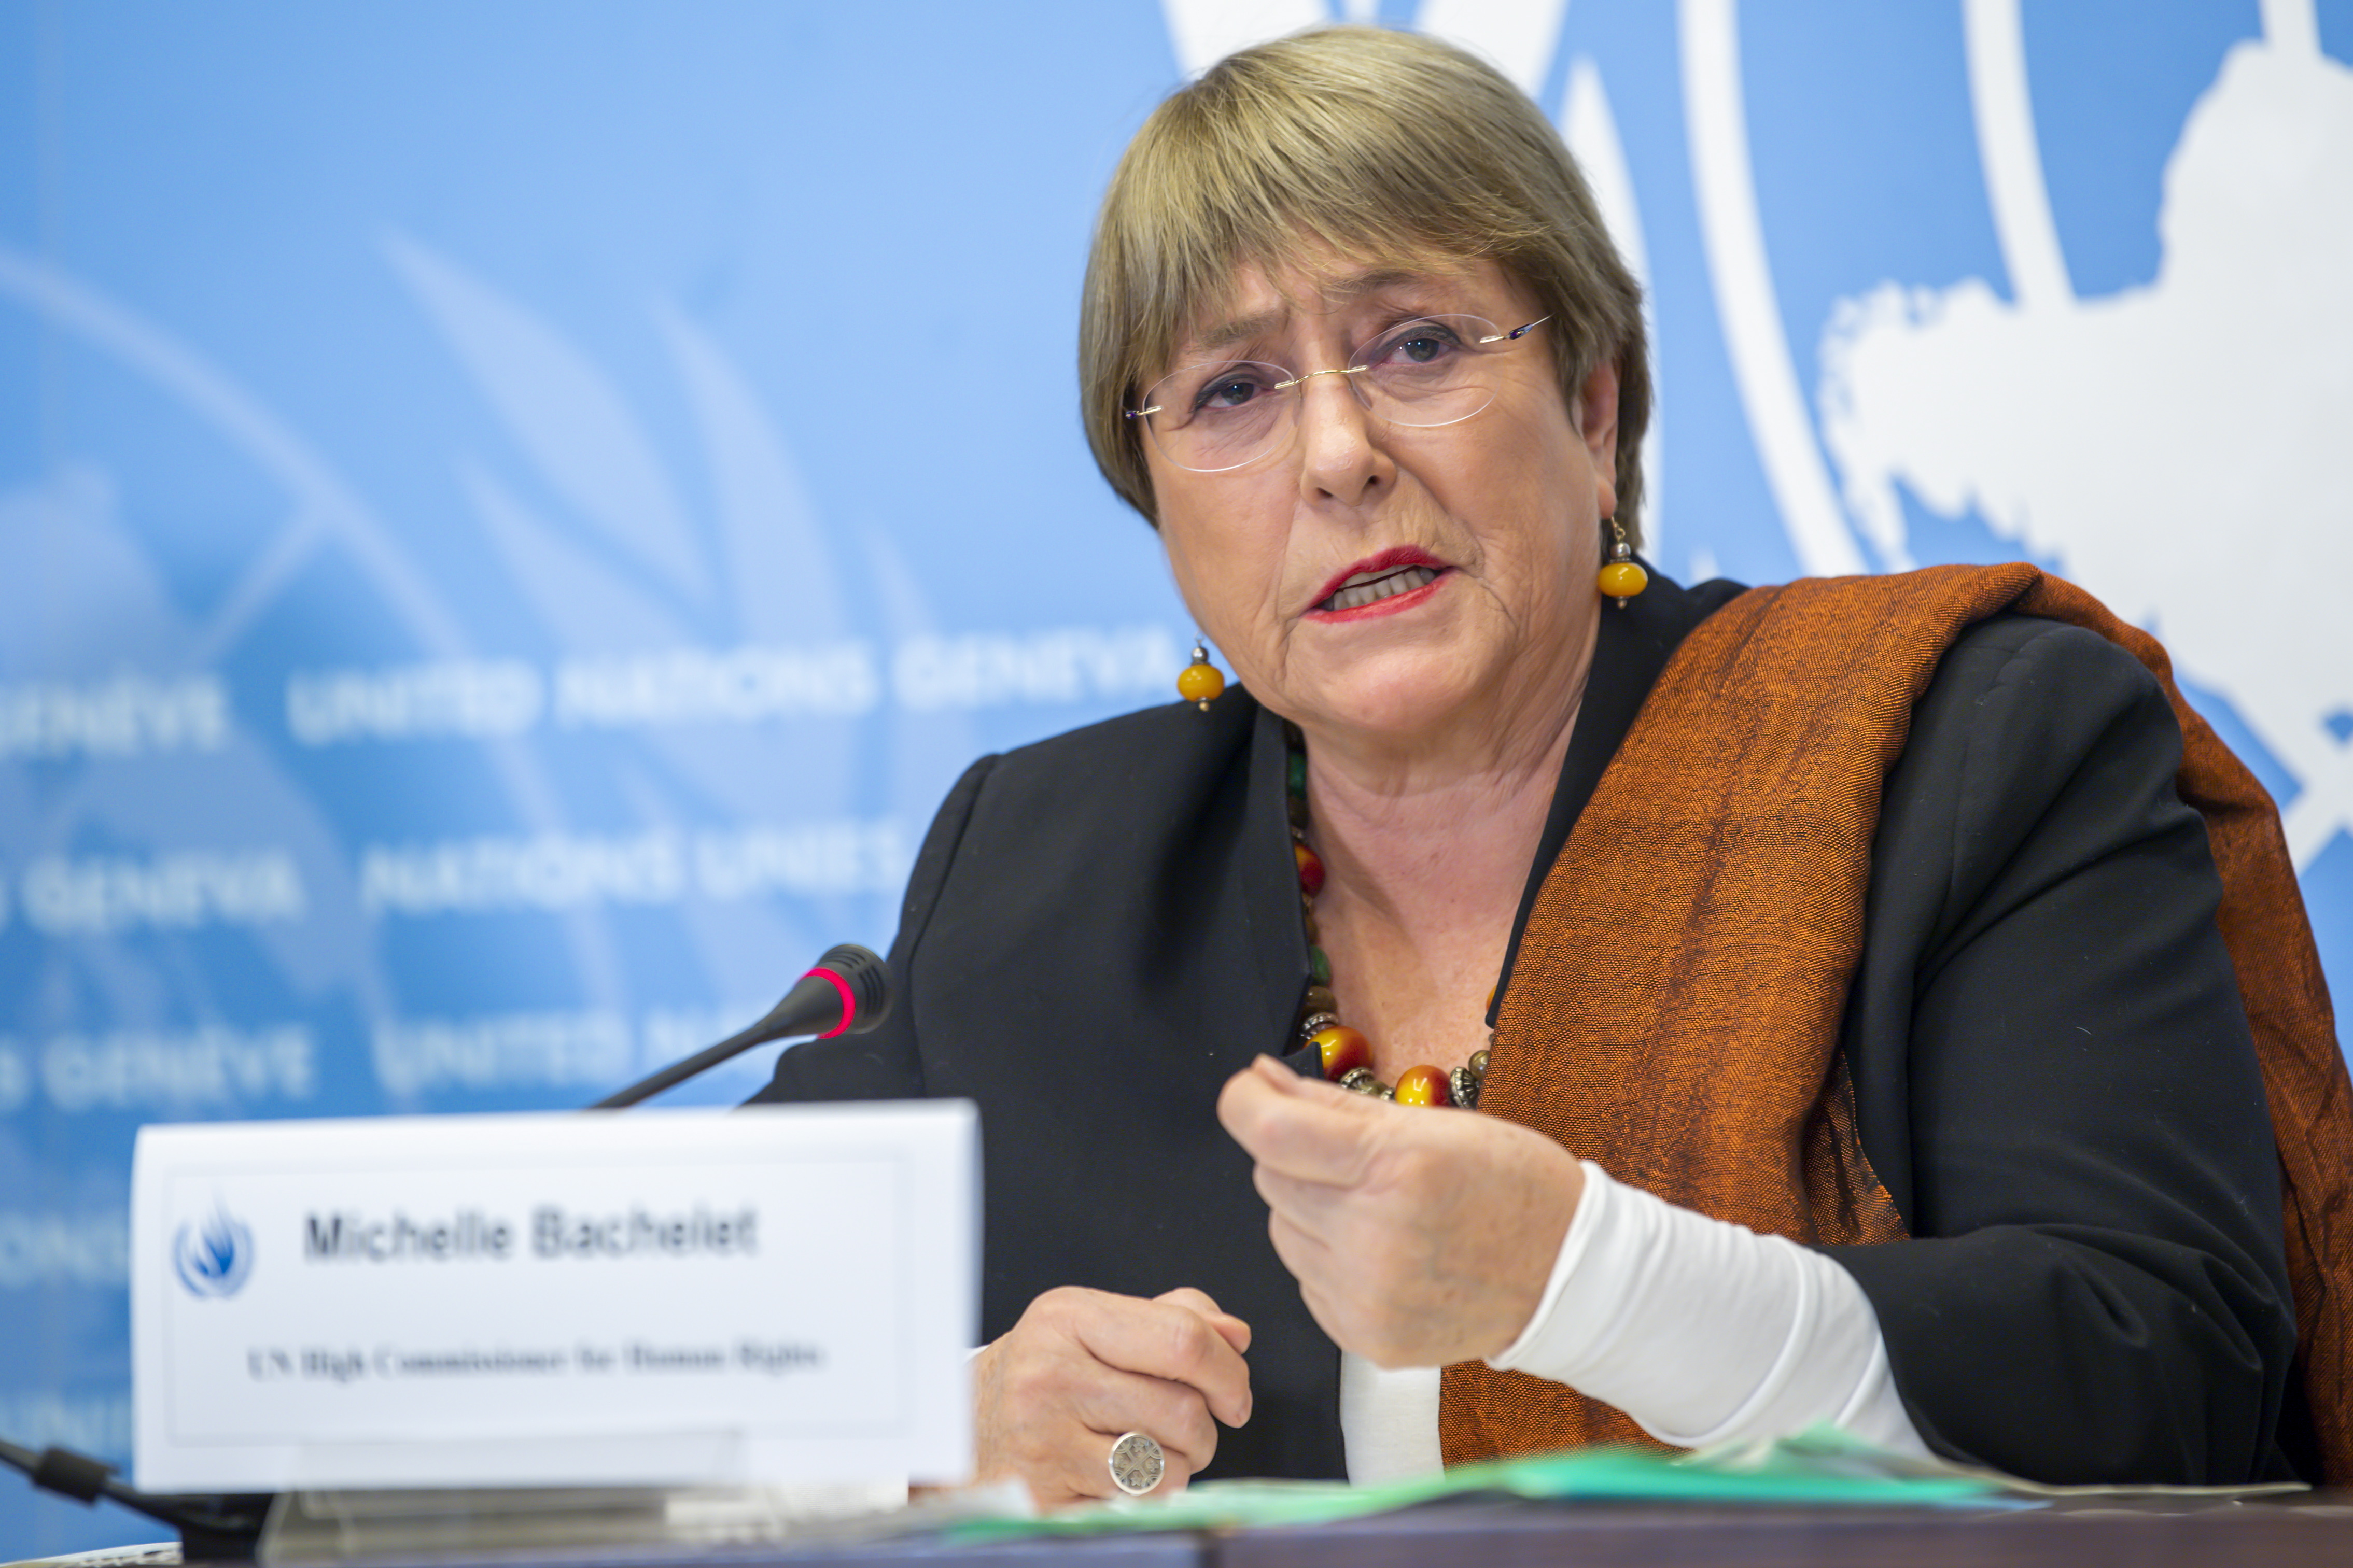 La alta comisionada de la ONU para los Derechos Humanos, Michelle Bachelet, exigió a las autoridades mexicanas "redoblar sus esfuerzos" para terminar con el flagelo de las desapariciones forzadas, las cuales ya superan las 100 mil personas. (Foto: EFE/EPA/MARTIAL TREZZINI/Archivo)
